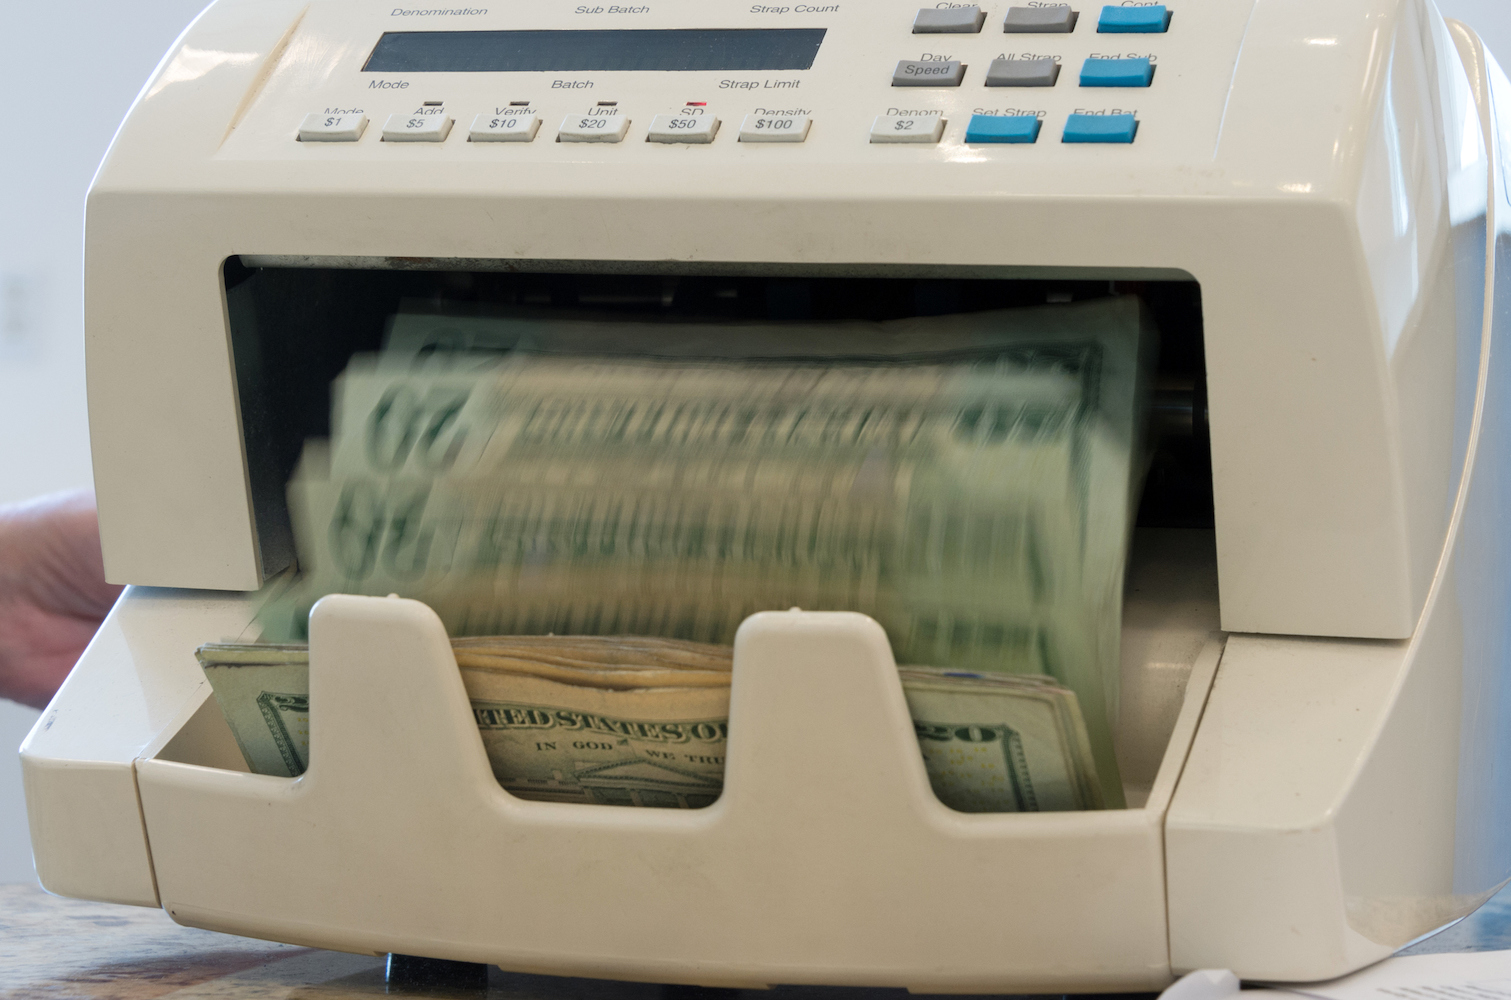 Machine counting twenty dollars bills